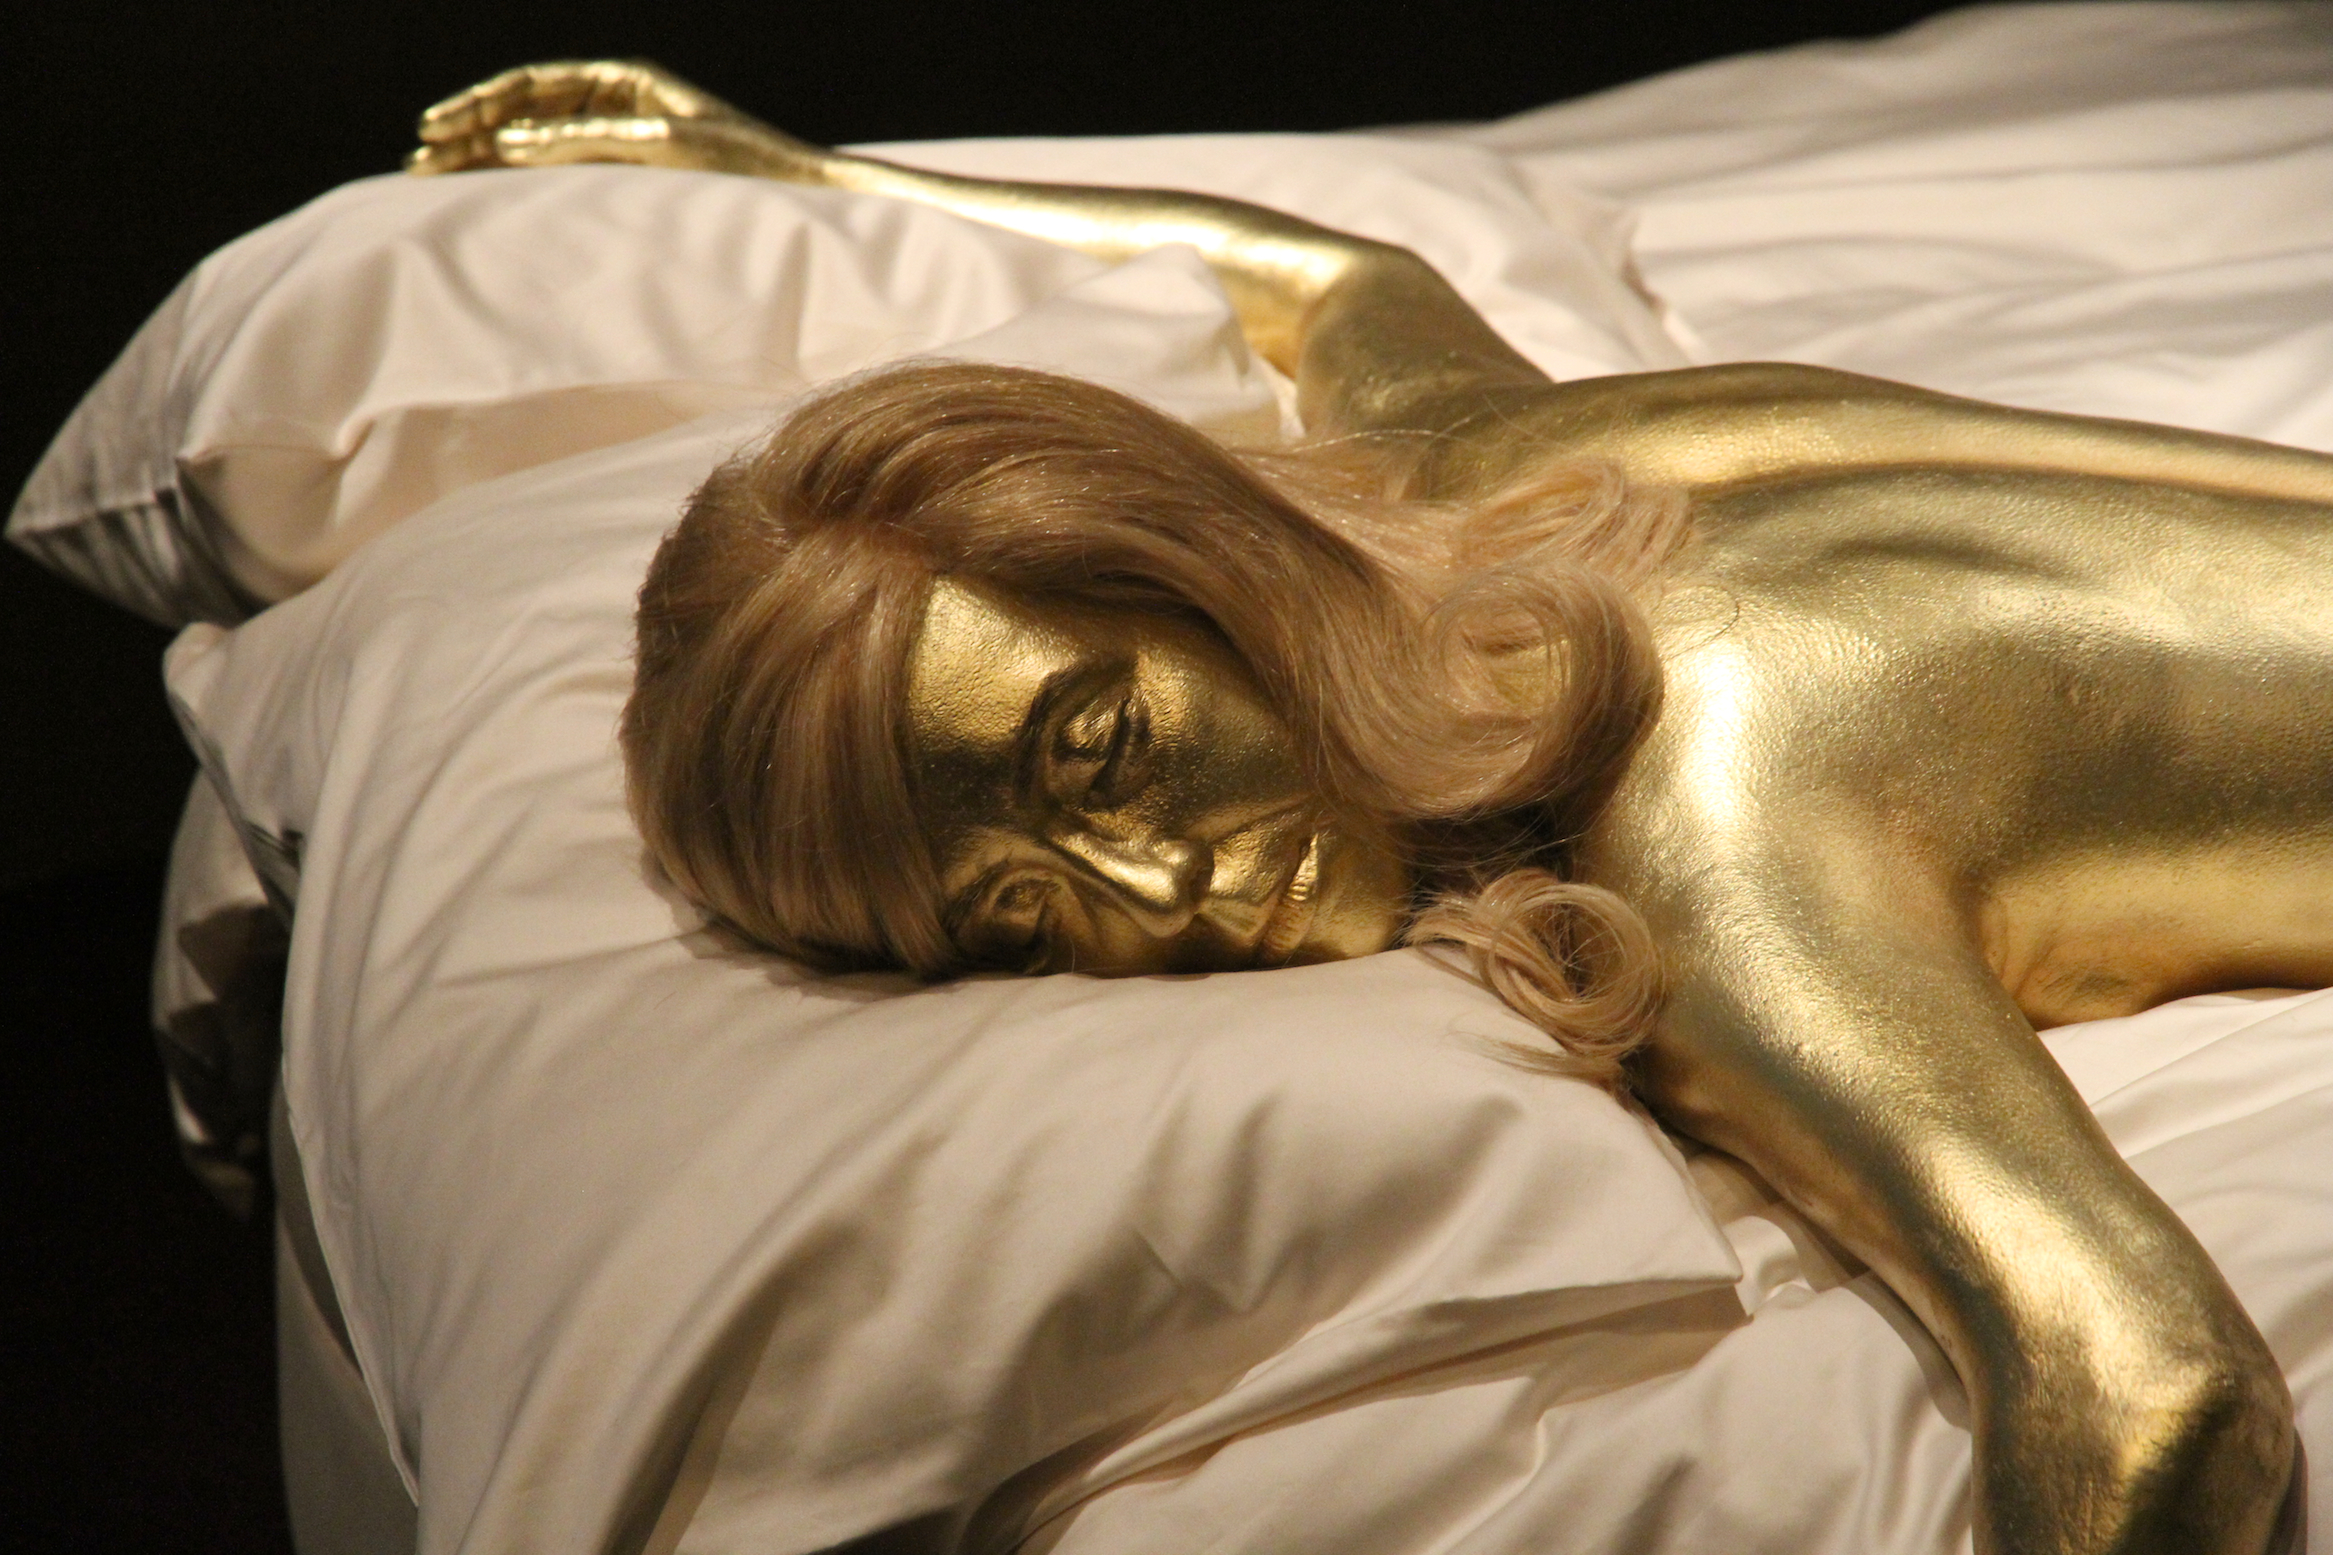 Eine Reproduktion der goldbemalten Shirley Eaton als Jill Masterson im Film "Goldfinger", am 5. Juli 2012. | Quelle: Getty Images